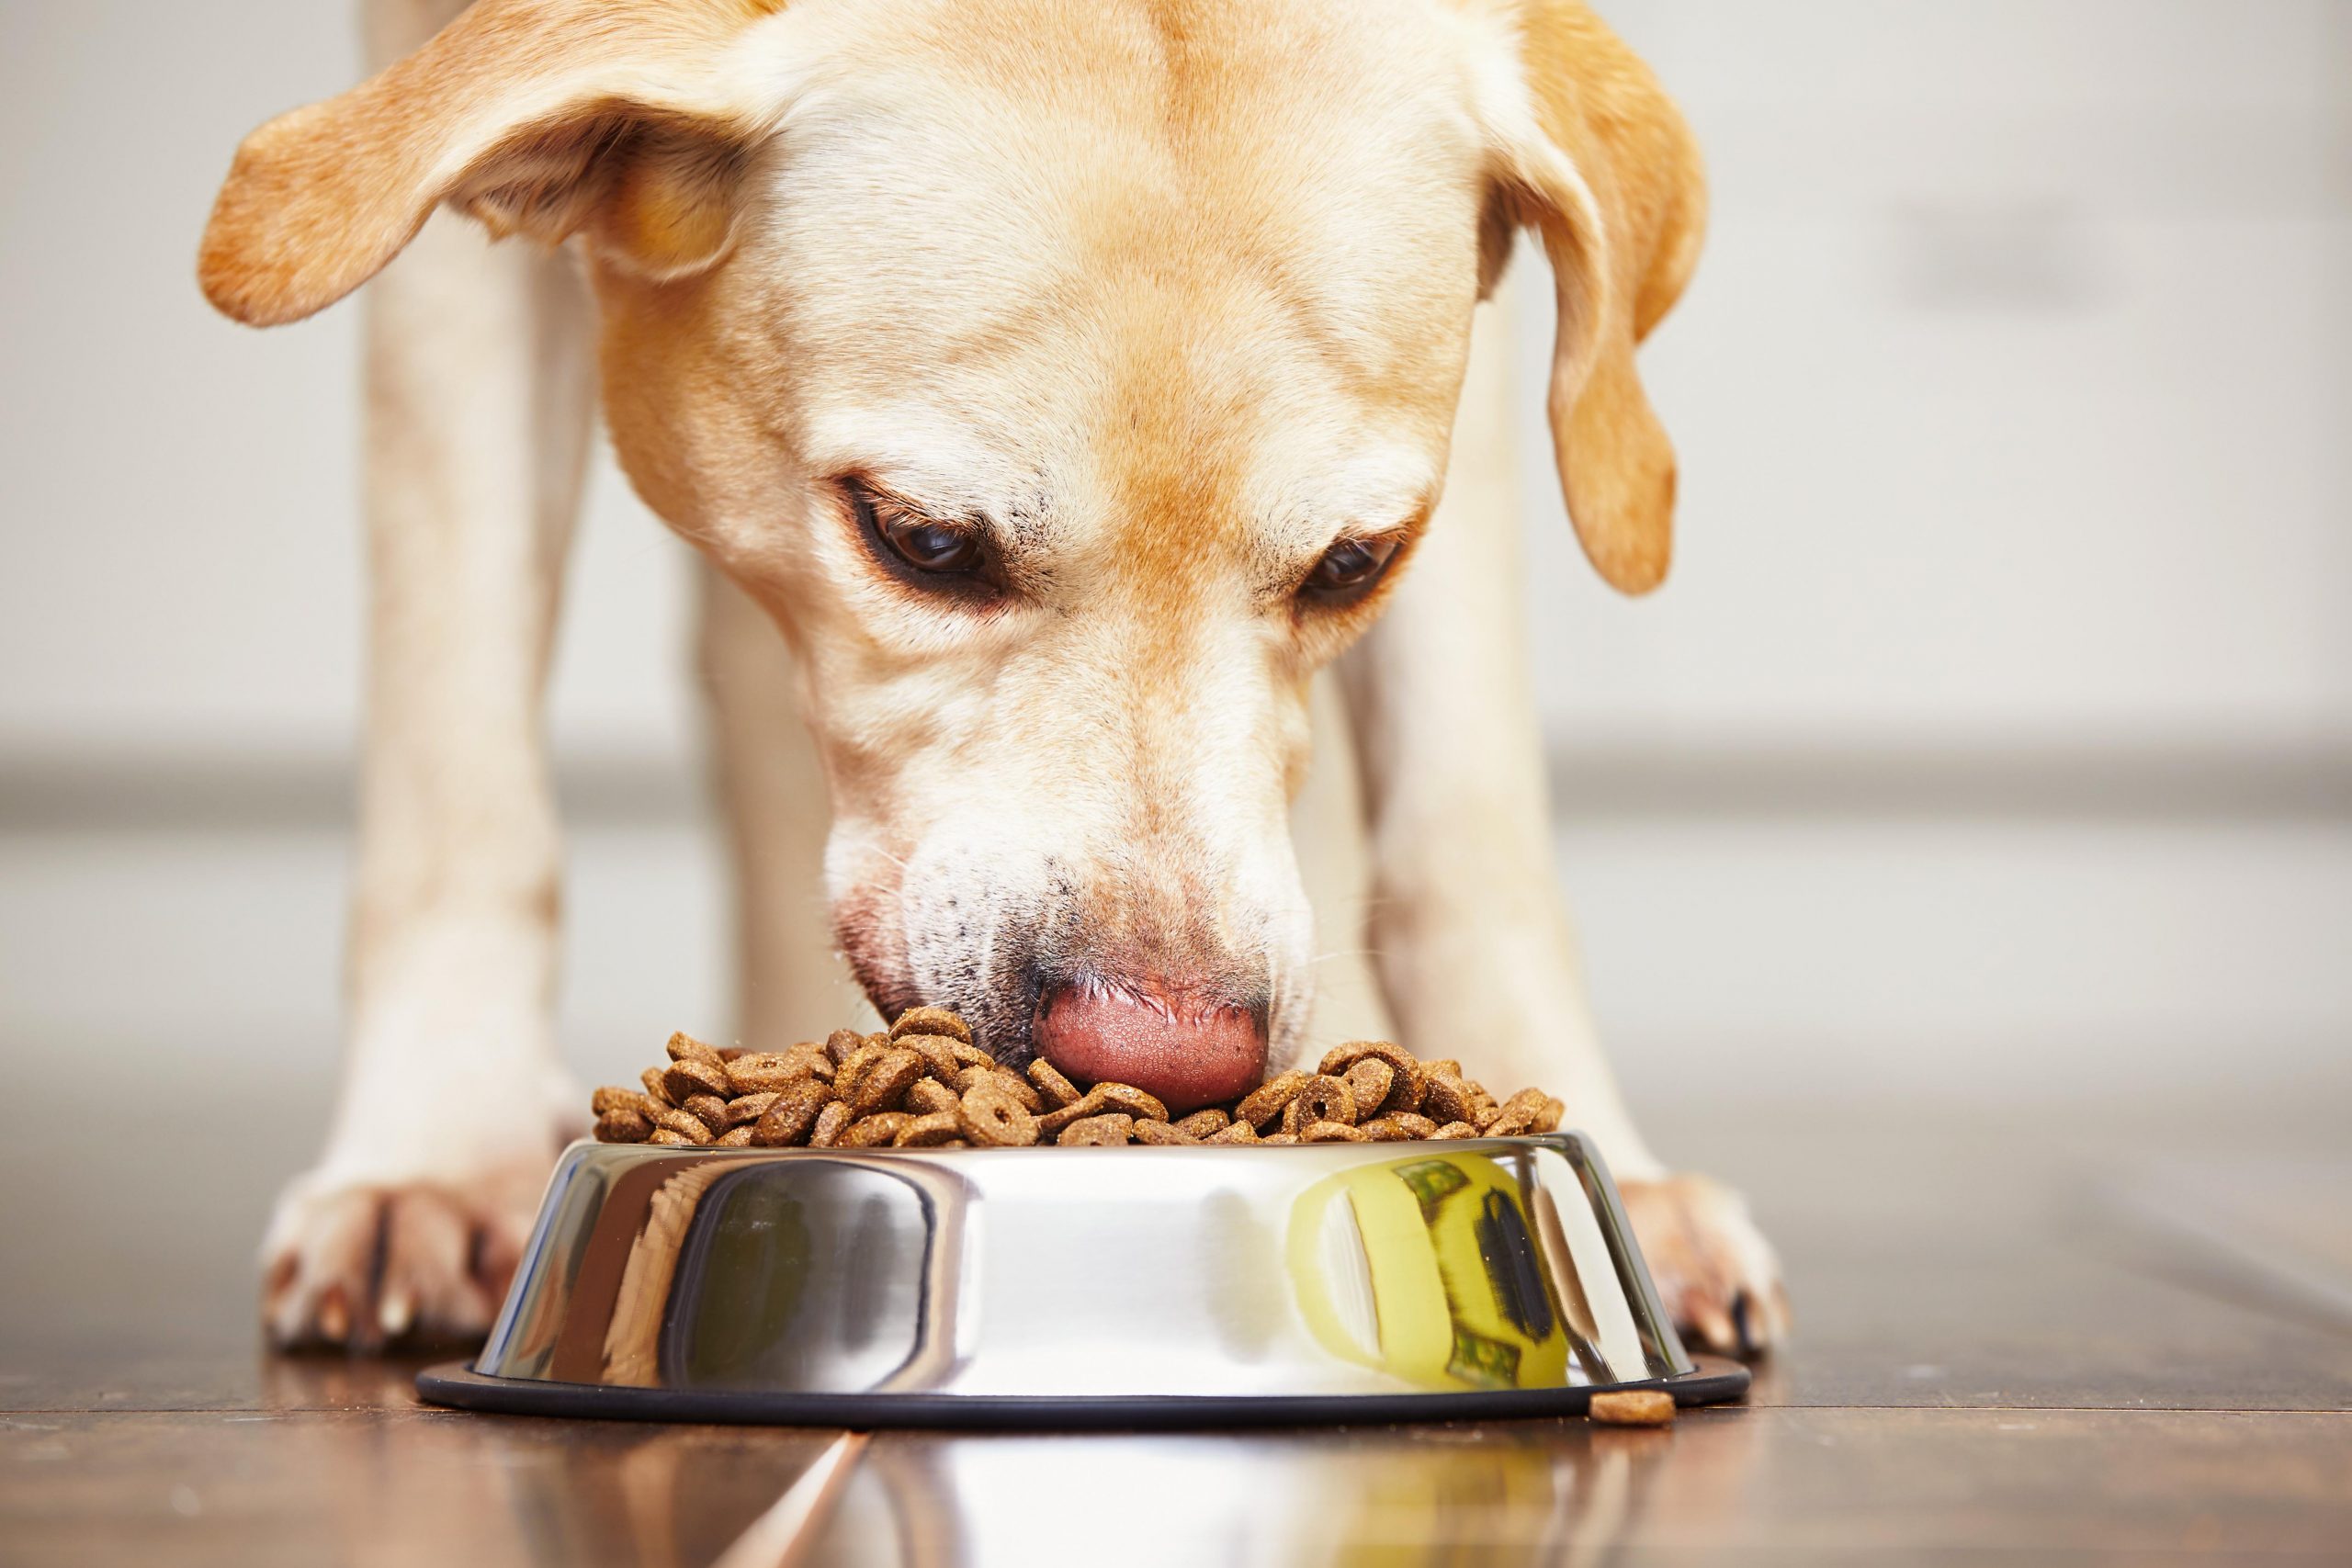 A dog eating pet food